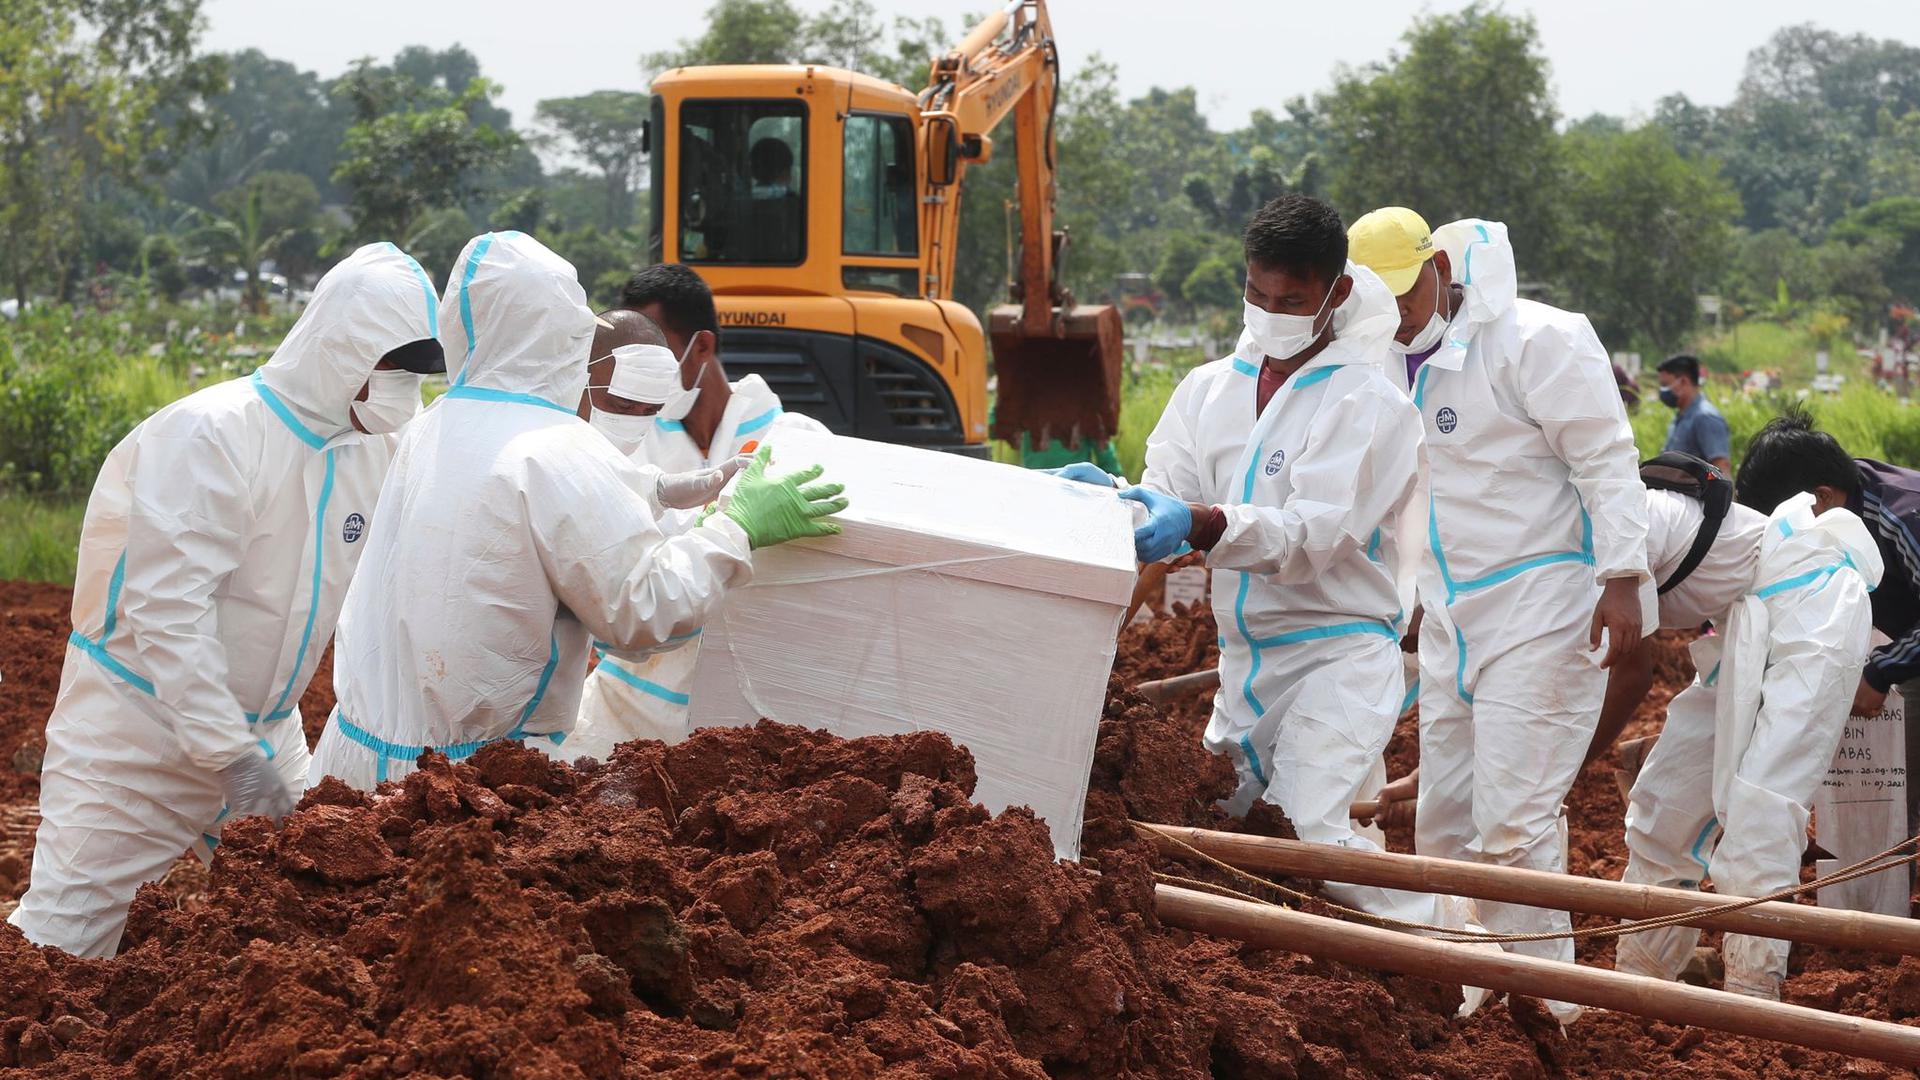 Arbeiter bereiten einen Sarg für eine Beerdigung auf dem speziellen Corona-Abschnitt eines Friedhofs in Indonesien vor.